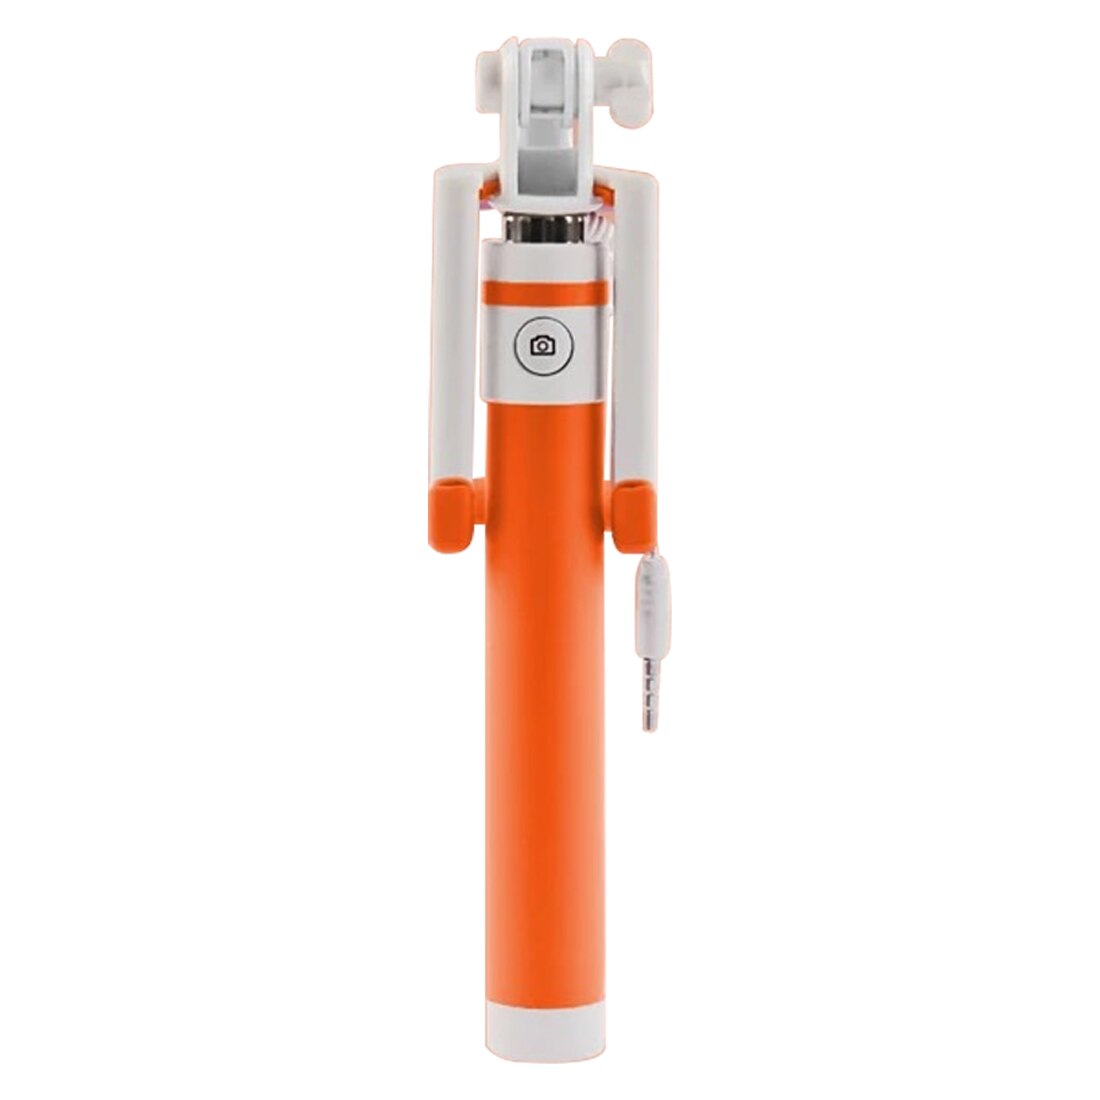 Farverig kabelforbundet selfie-stick, der kan foldes selfie-stick universal selfie-stick til mobiltelefon: Orange